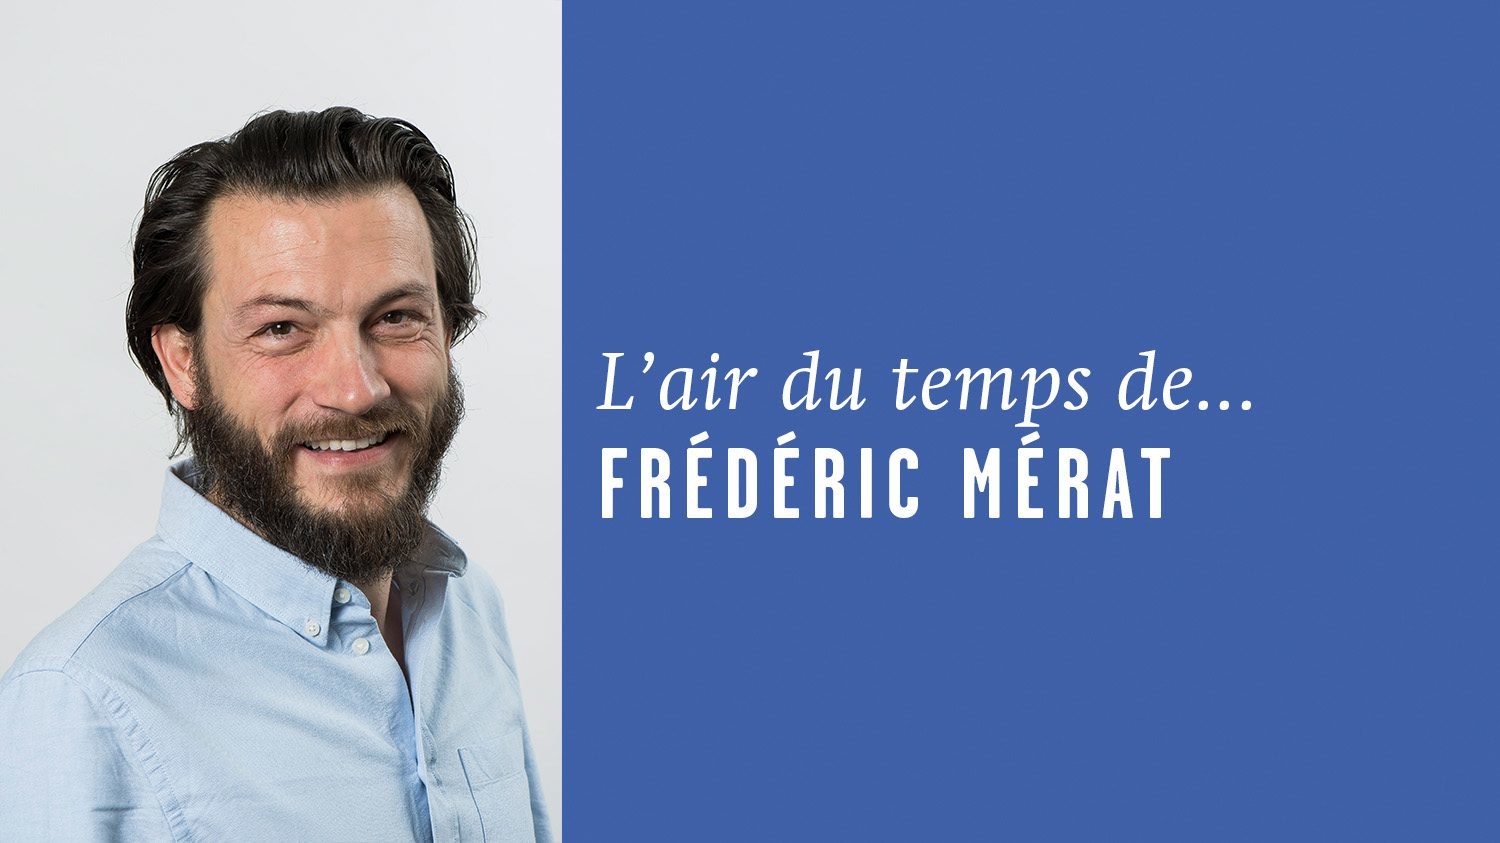 AirDutemps-FredericMerat